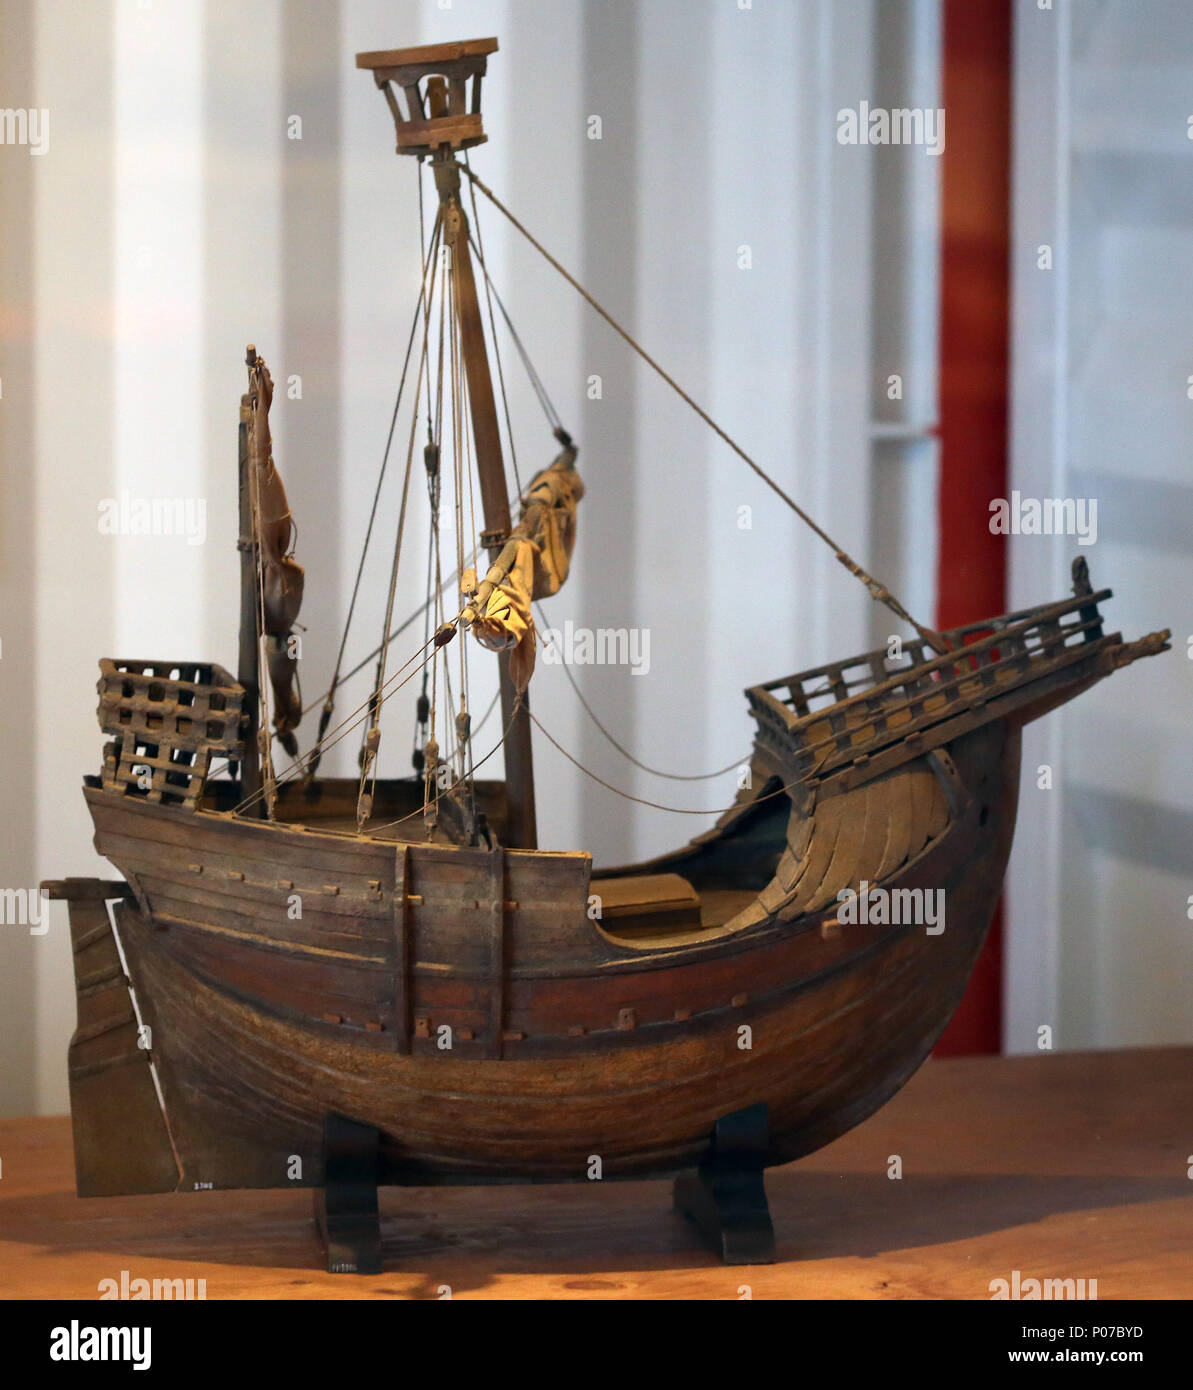 Coca von Mataro. Cocche votive Modell, mediterrane Anpassung der Cog. 15 Cent. Maritime Museum von Barcelona. Spanien. Stockfoto